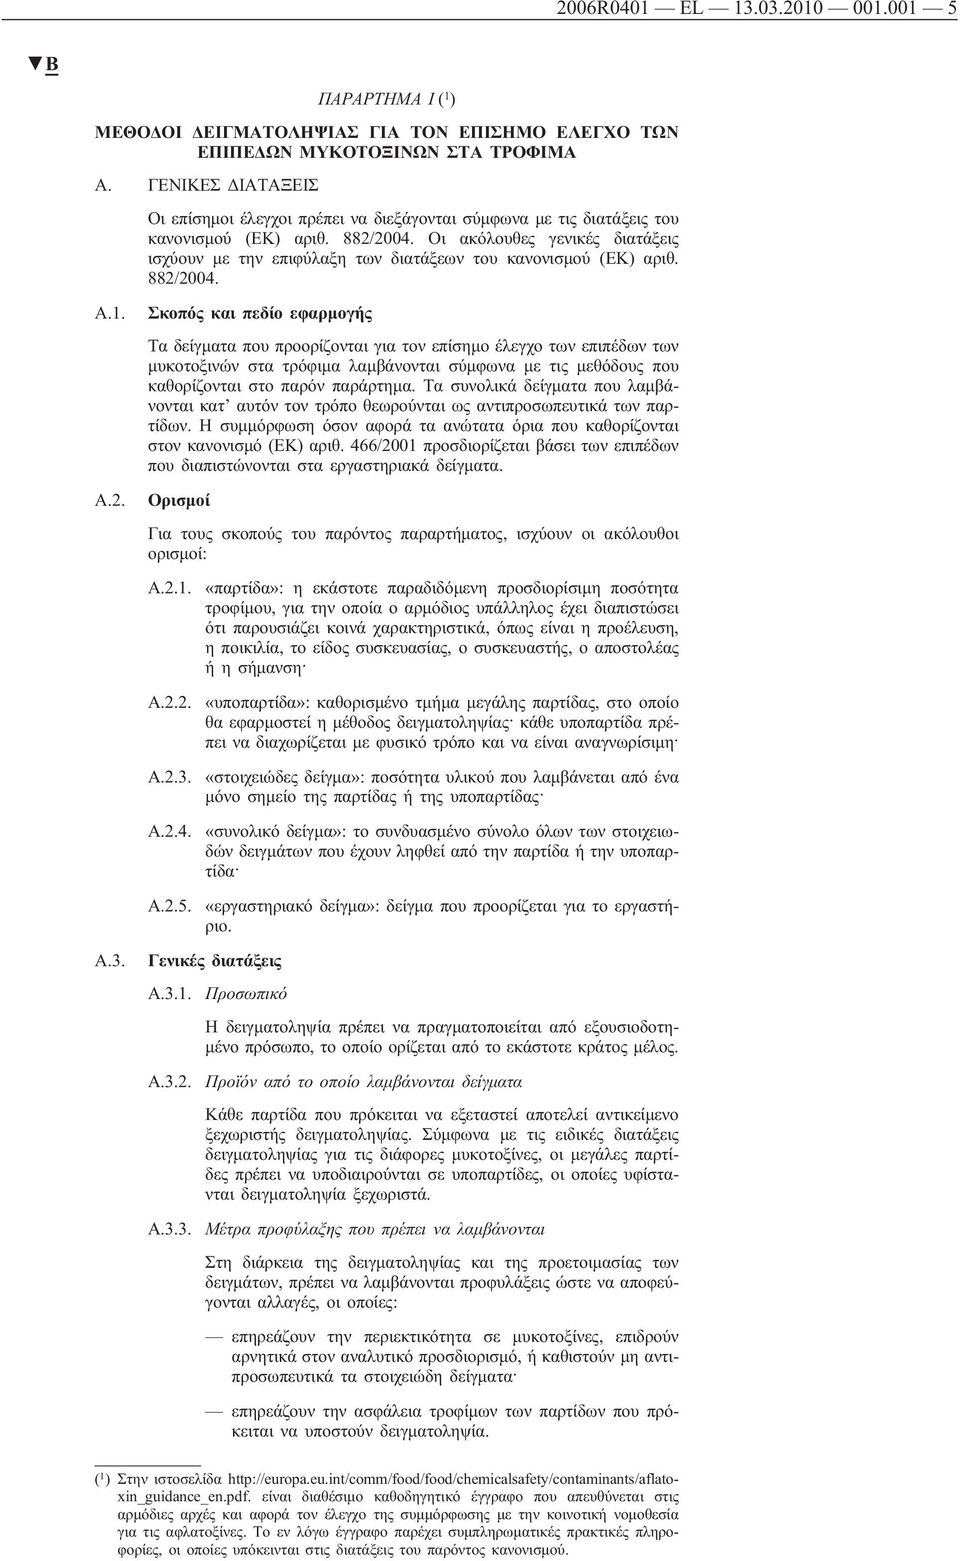 Οι ακόλουθες γενικές διατάξεις ισχύουν με την επιφύλαξη των διατάξεων του κανονισμού (ΕΚ) αριθ. 882/2004. A.1. A.2. A.3.